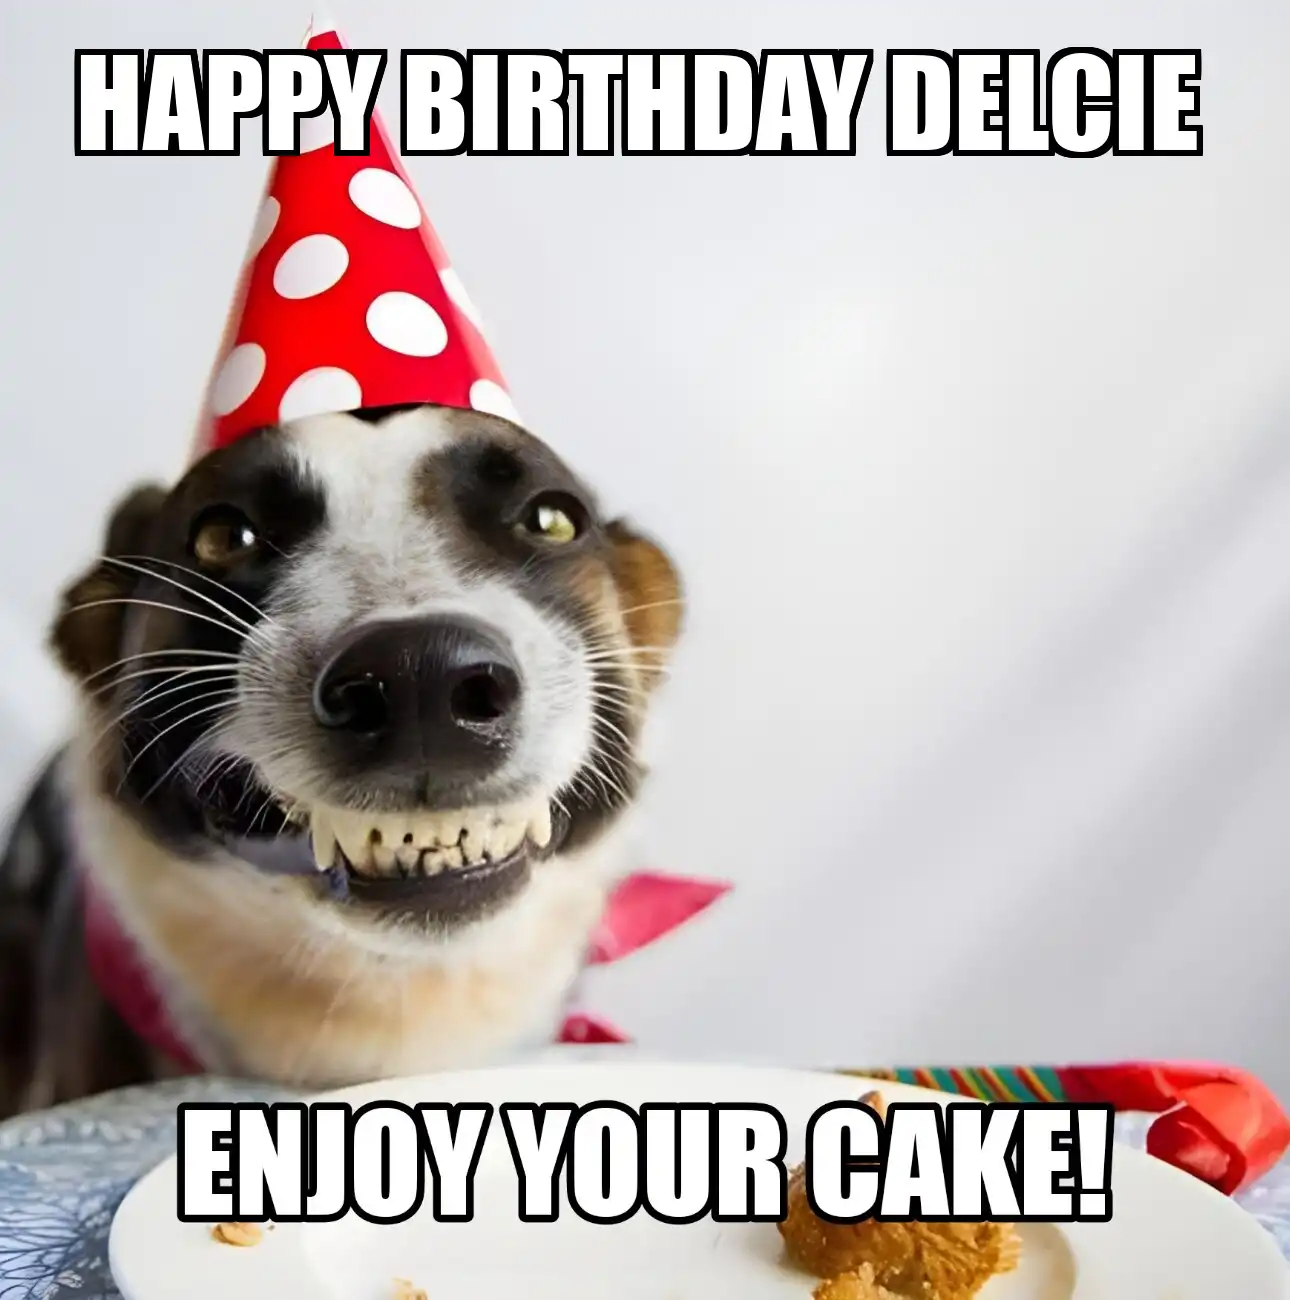 Happy Birthday Delcie Enjoy Your Cake Dog Meme